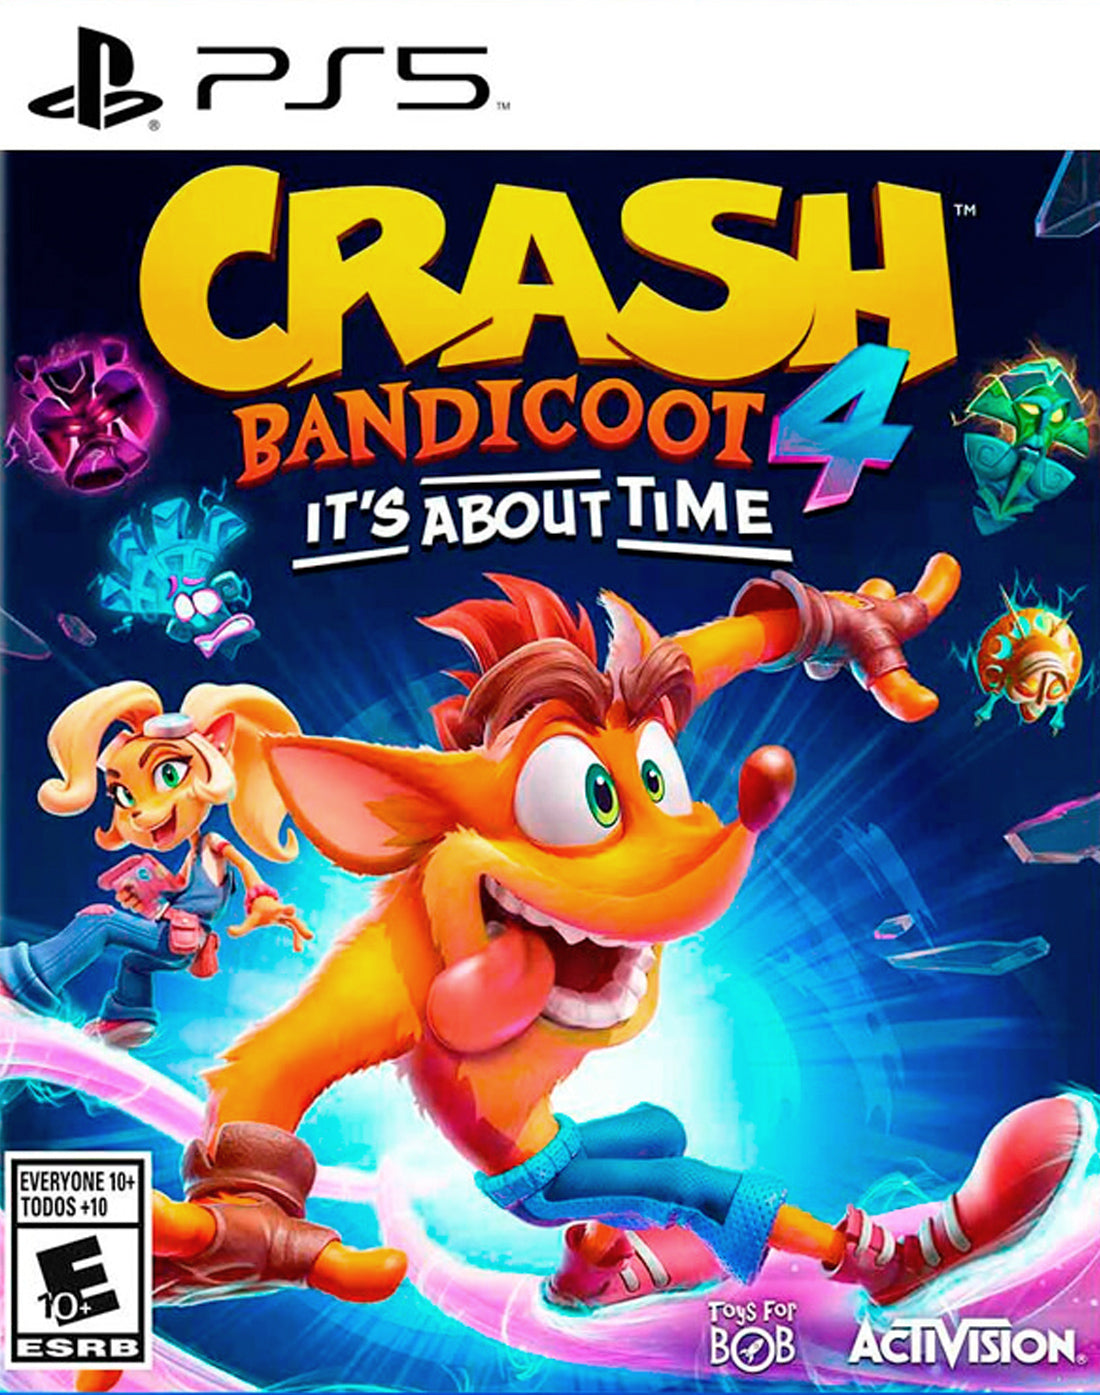 Crash Bandicoot: 4 PS5